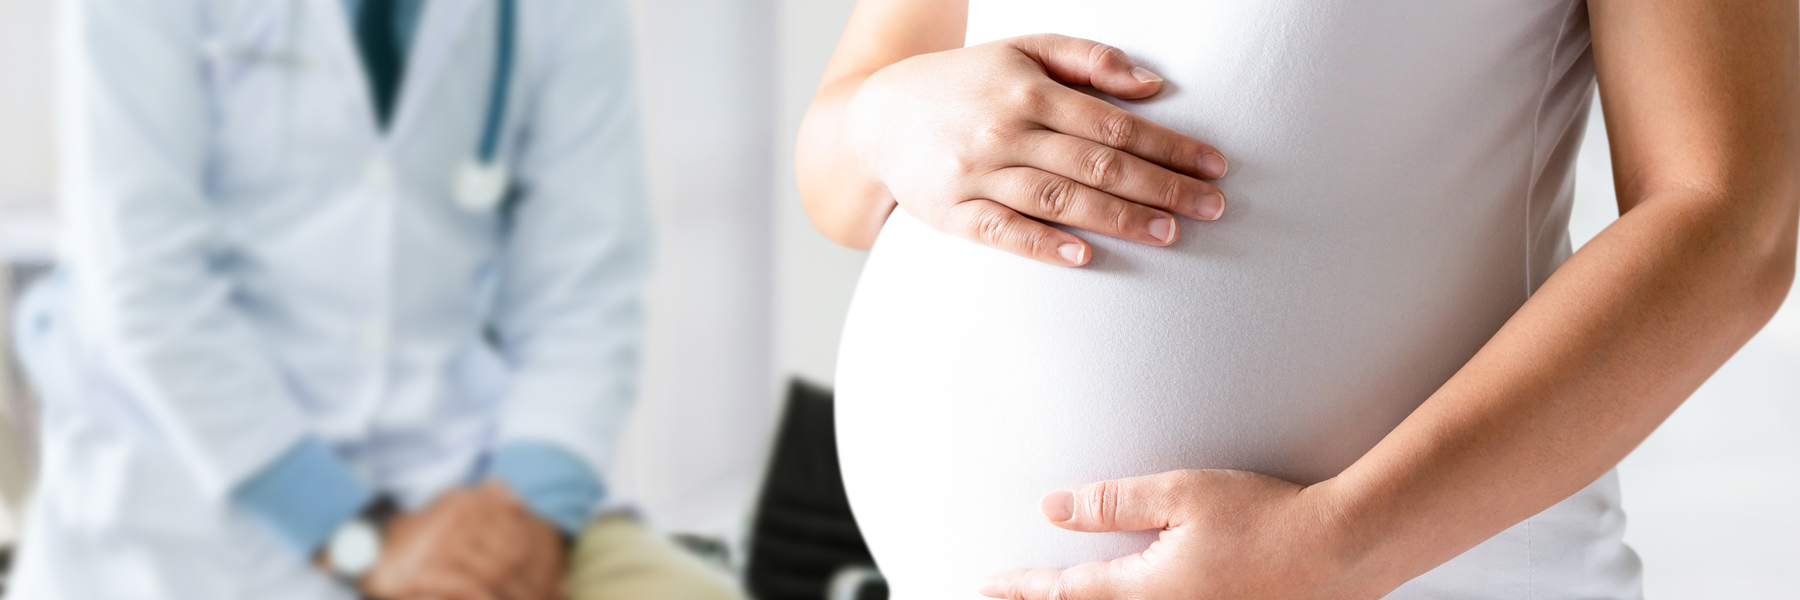 هل إبرة الظهر مفيدة للحامل قبل الولادة؟